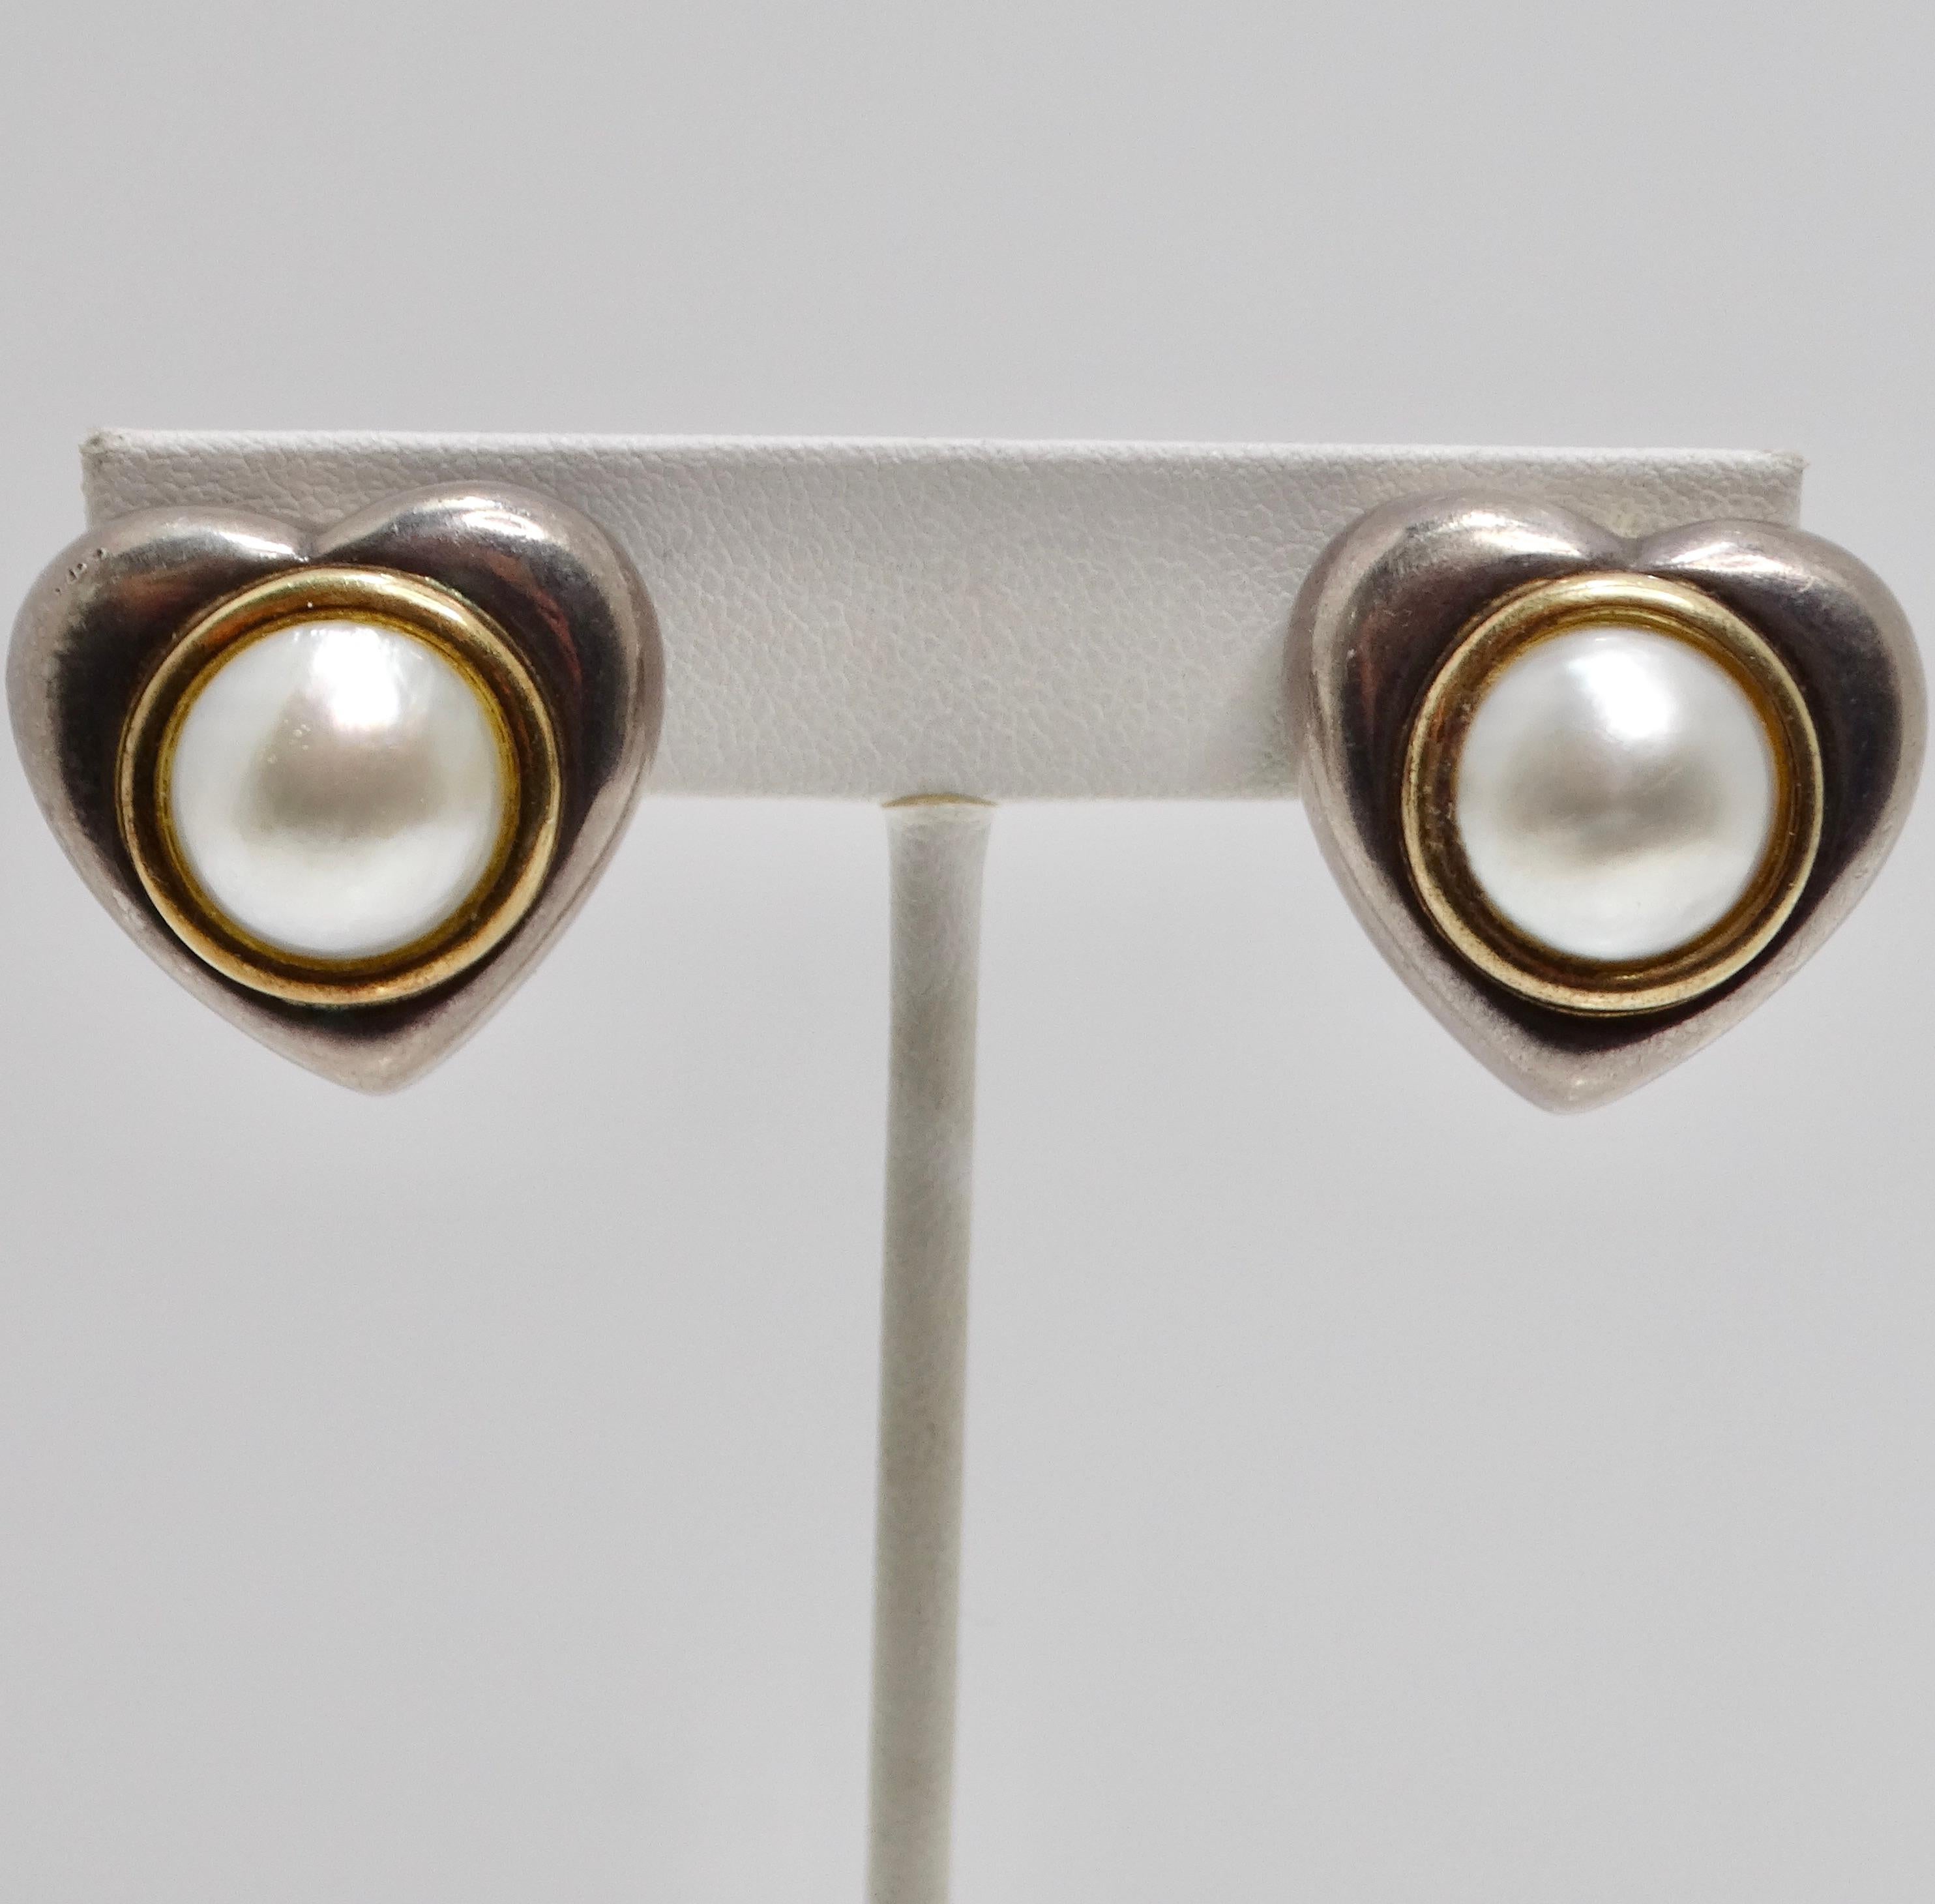 Wir präsentieren die exquisiten 1960er Jahre 18K Gold Silber Perlenohrringe, ein wunderschönes Vintage-Accessoire, das zeitlose Eleganz und Romantik ausstrahlt. Diese in den 1960er Jahren gefertigten herzförmigen Ohrringe bestehen aus einem